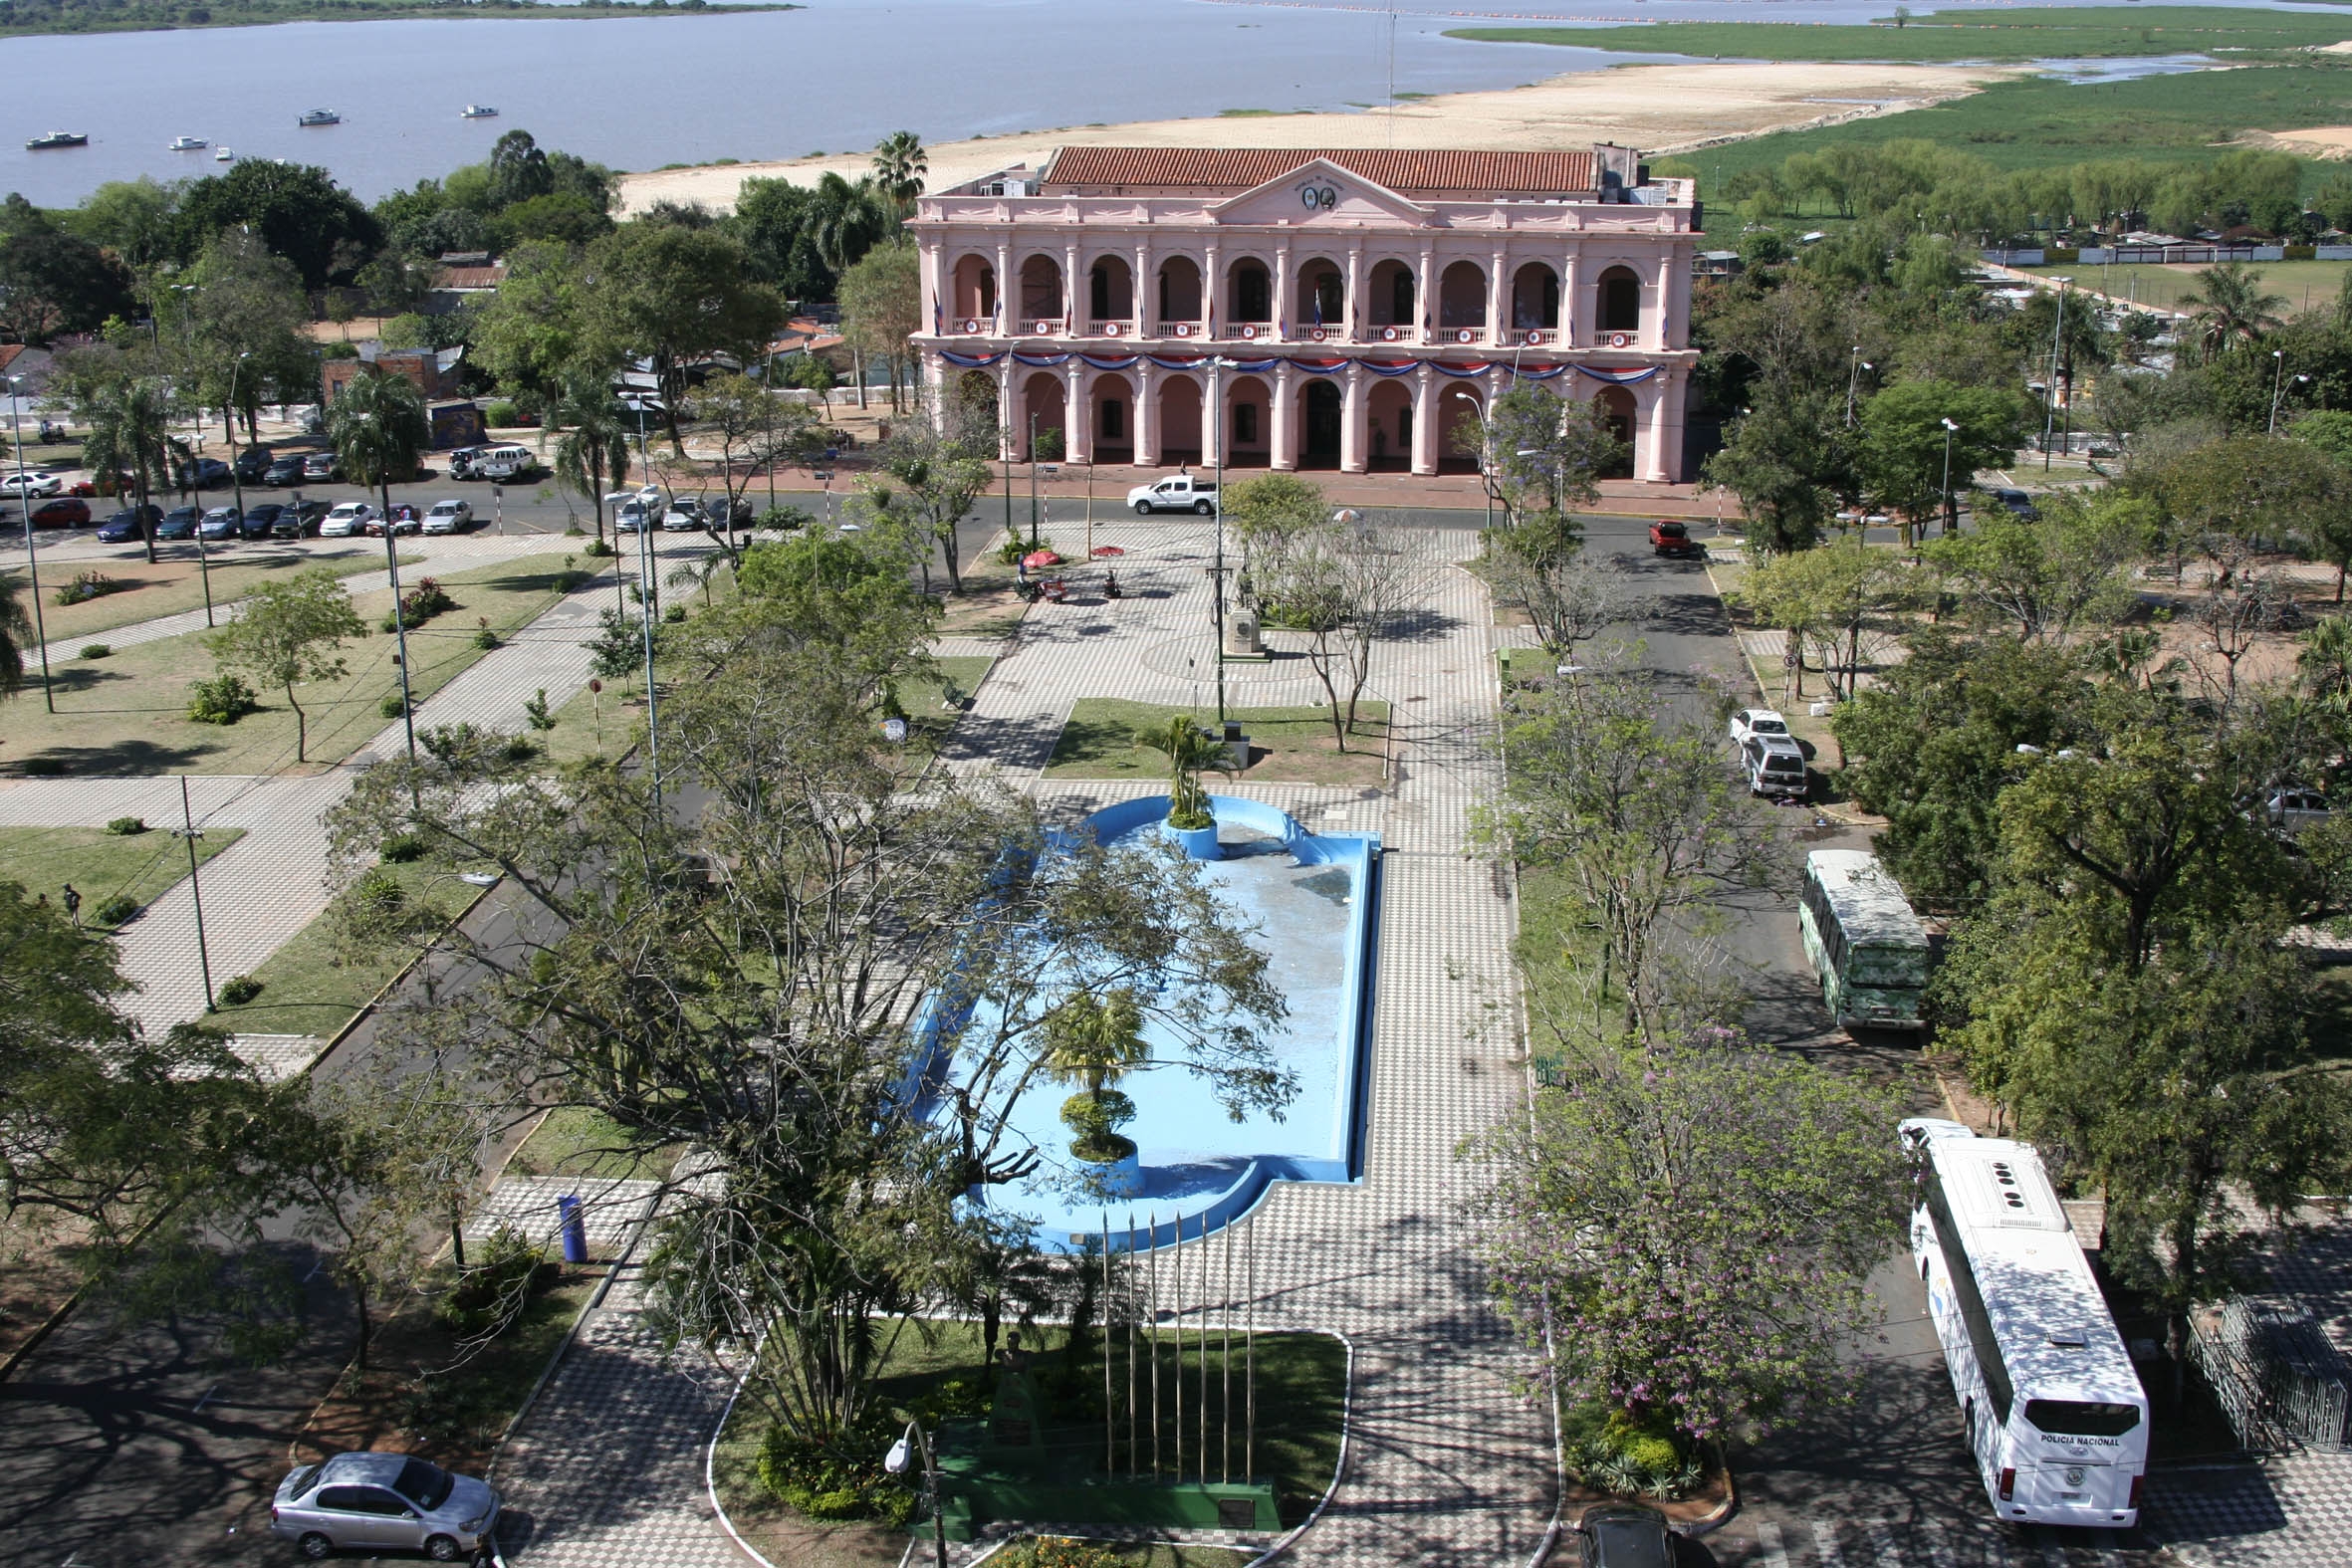 Aniversario de la fundación del Cabildo de Asunción|Paraguay Cabildo oñefunda hague ára imagen